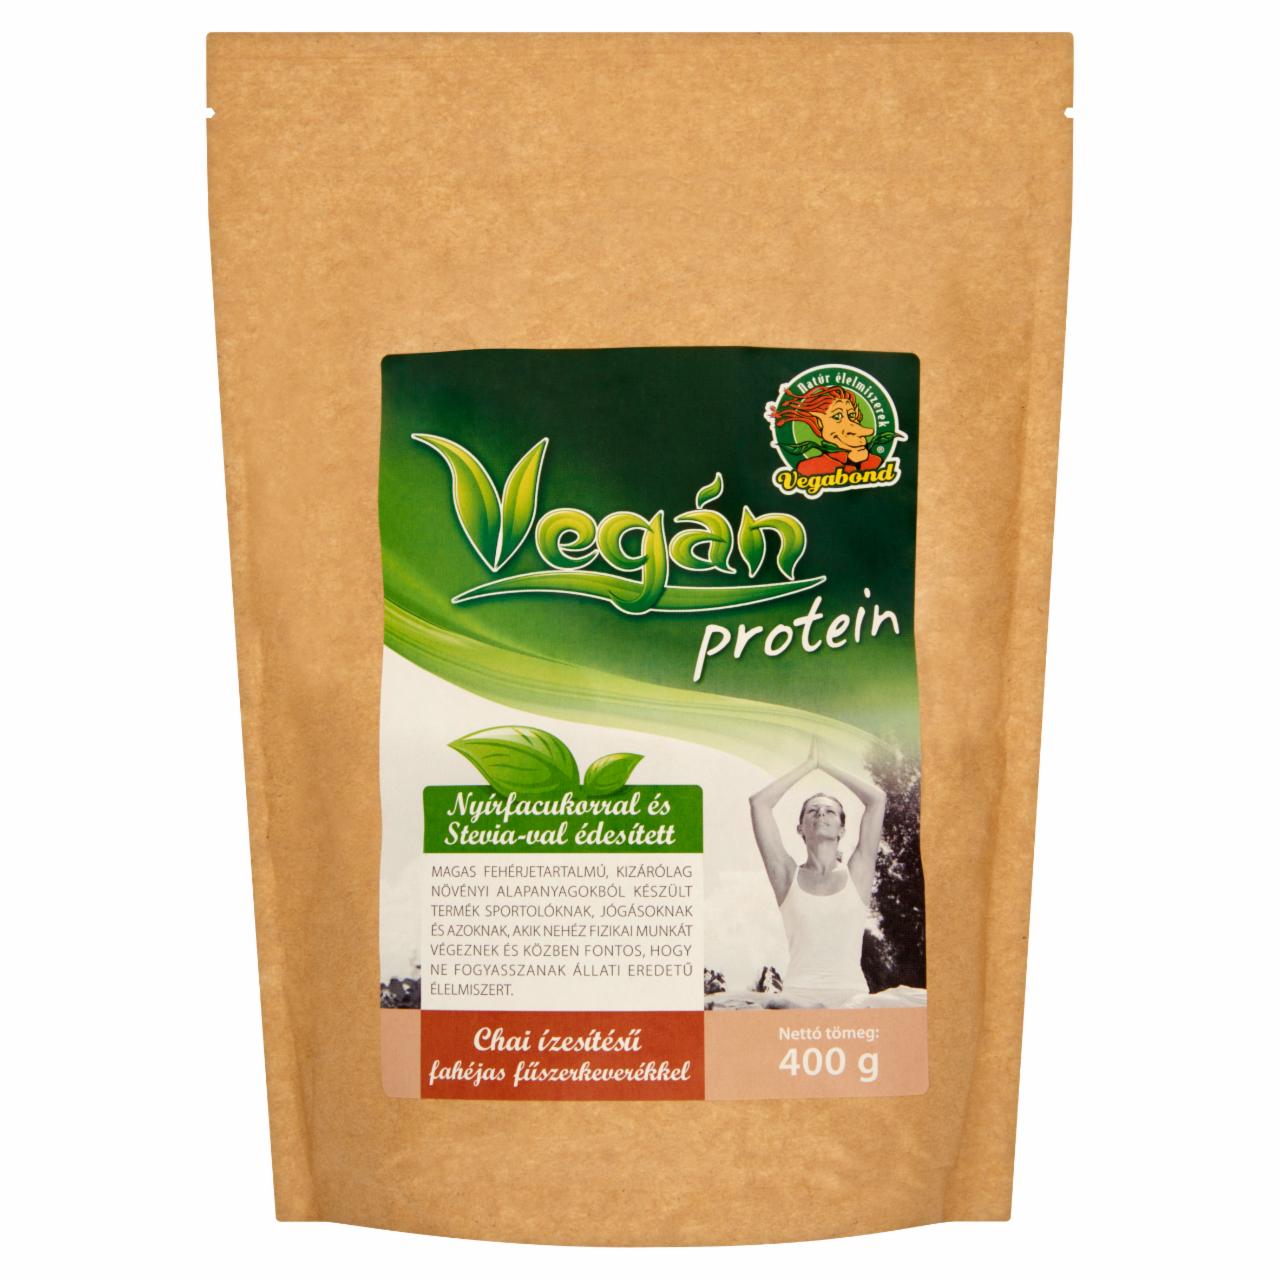 Képek - Vegabond Vegán Protein fehérje por Chai ízesítésű fahéjas fűszerkeverékkel 400 g